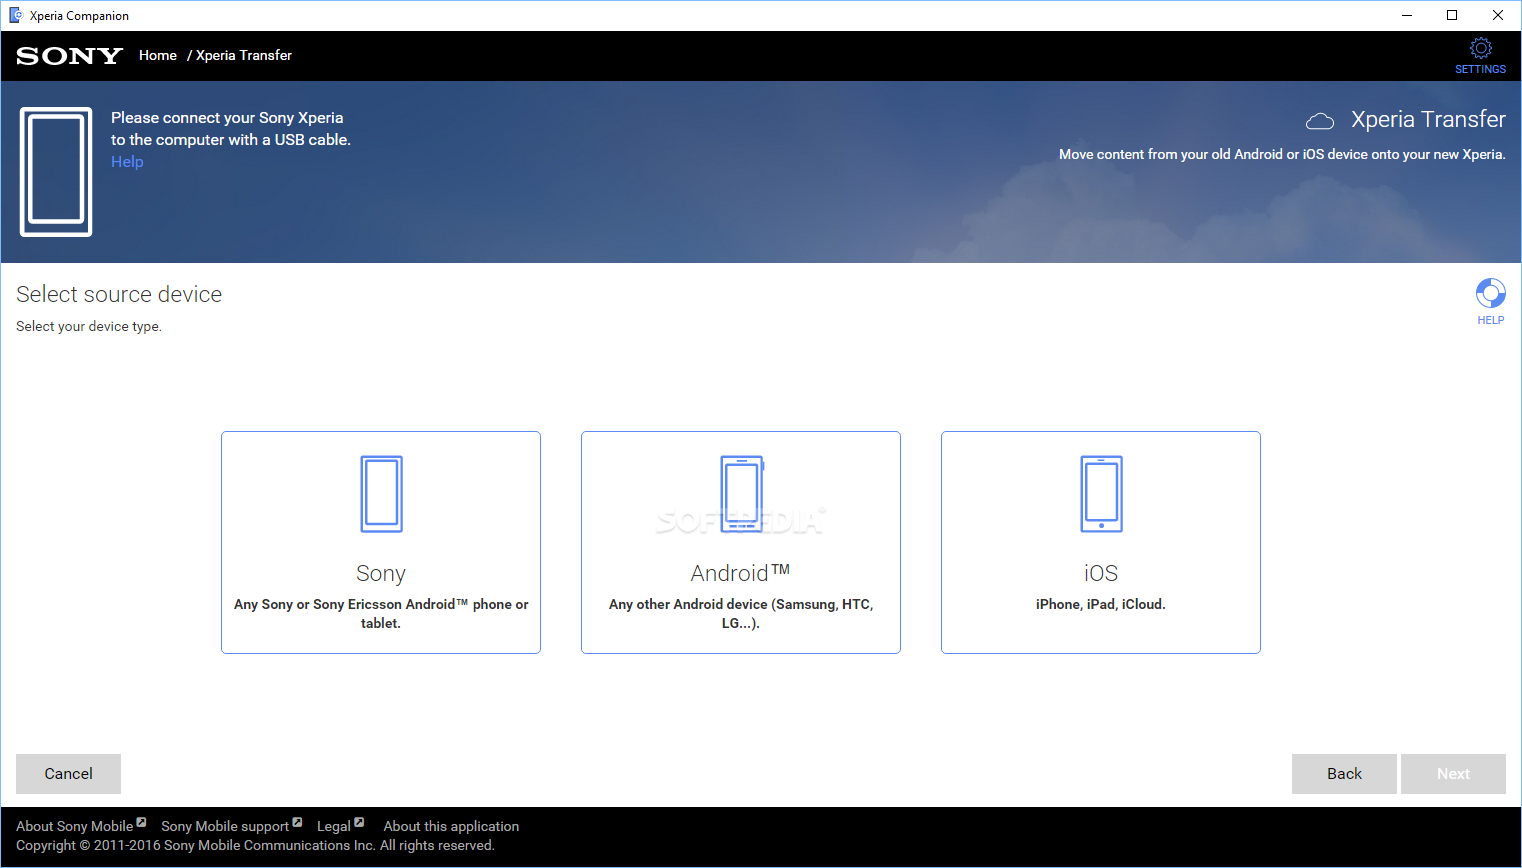 Download Sony Xperia Companion 2.2.5.0